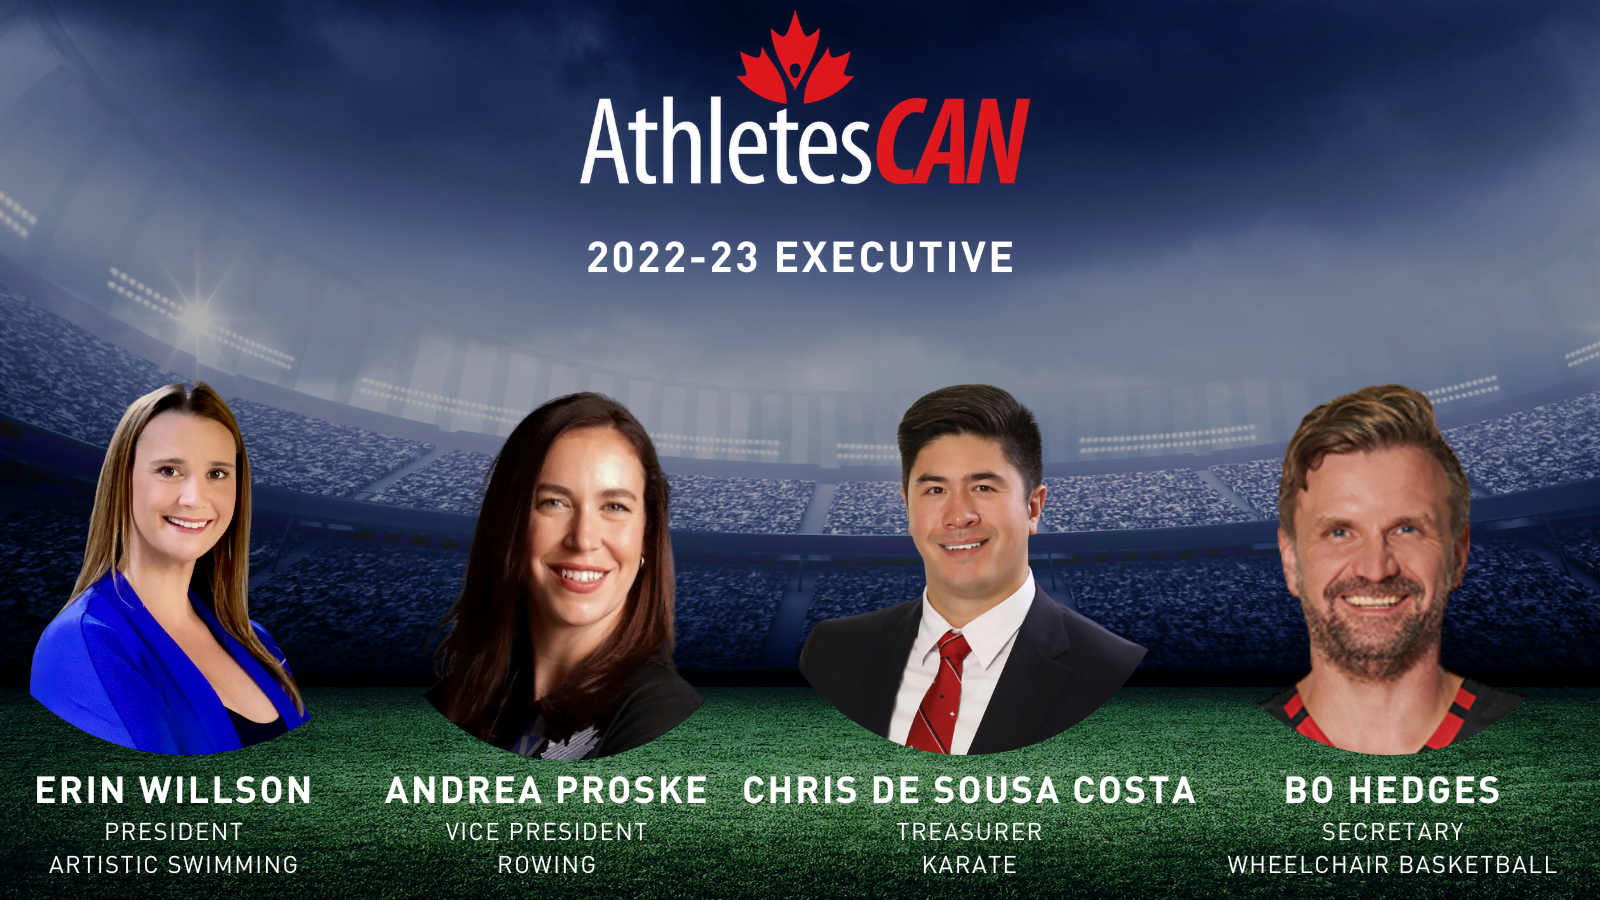 AthletesCAN appoints Proske Vice President, de Sousa Costa Treasurer, announces 2022-23 Executive